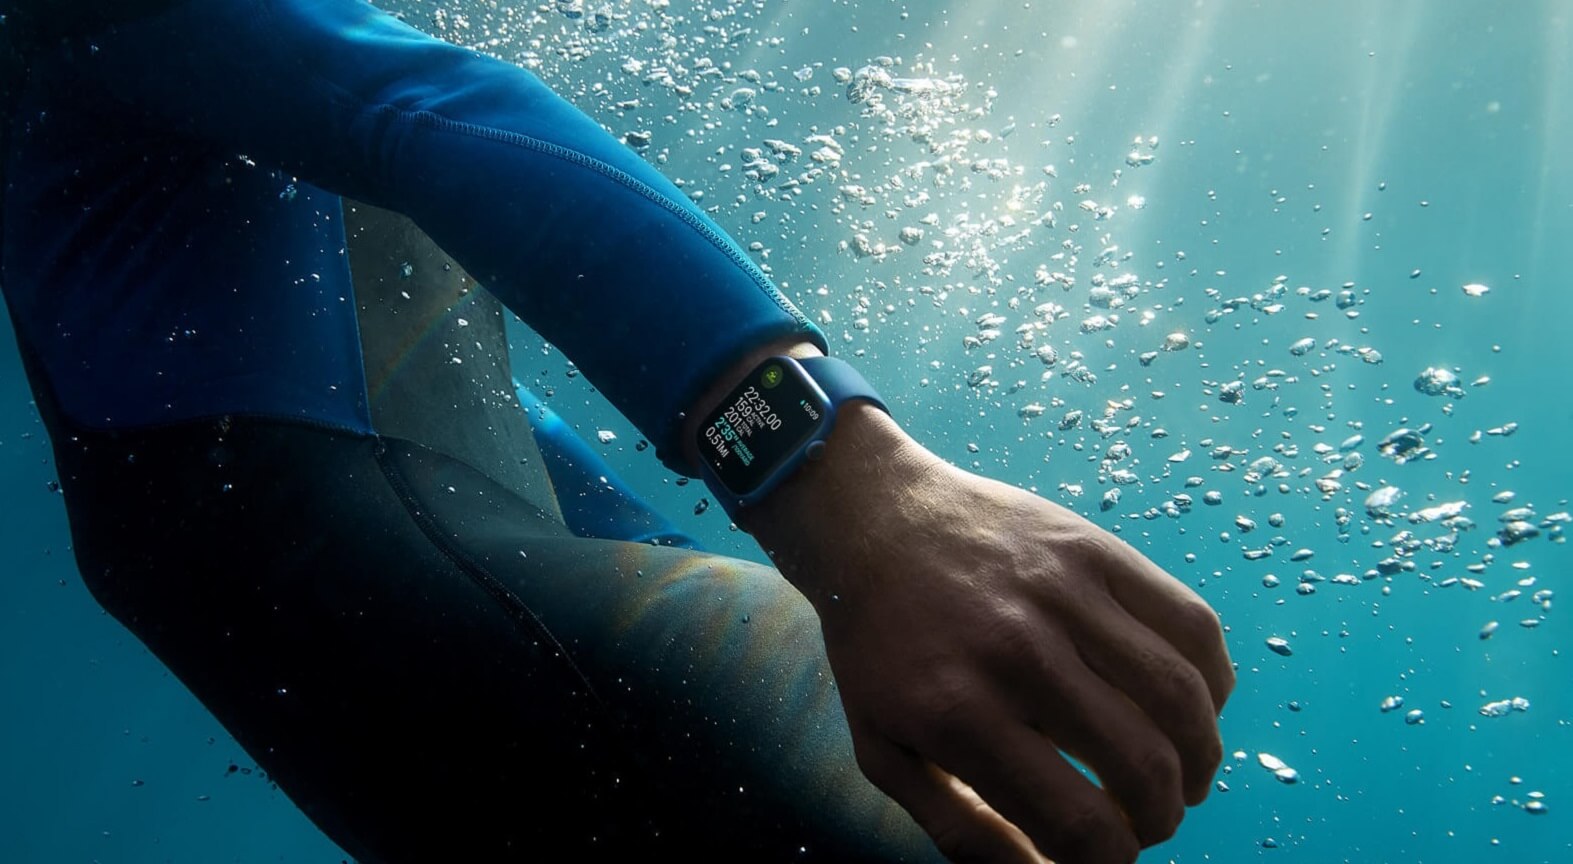 Hodinky Apple Watch Series 7 mají voděodolné provedení 5 ATM / 50WR, takže se s nimi můžete sprchovat, plavat a potápět se bez jakéhokoliv rizika poškození.